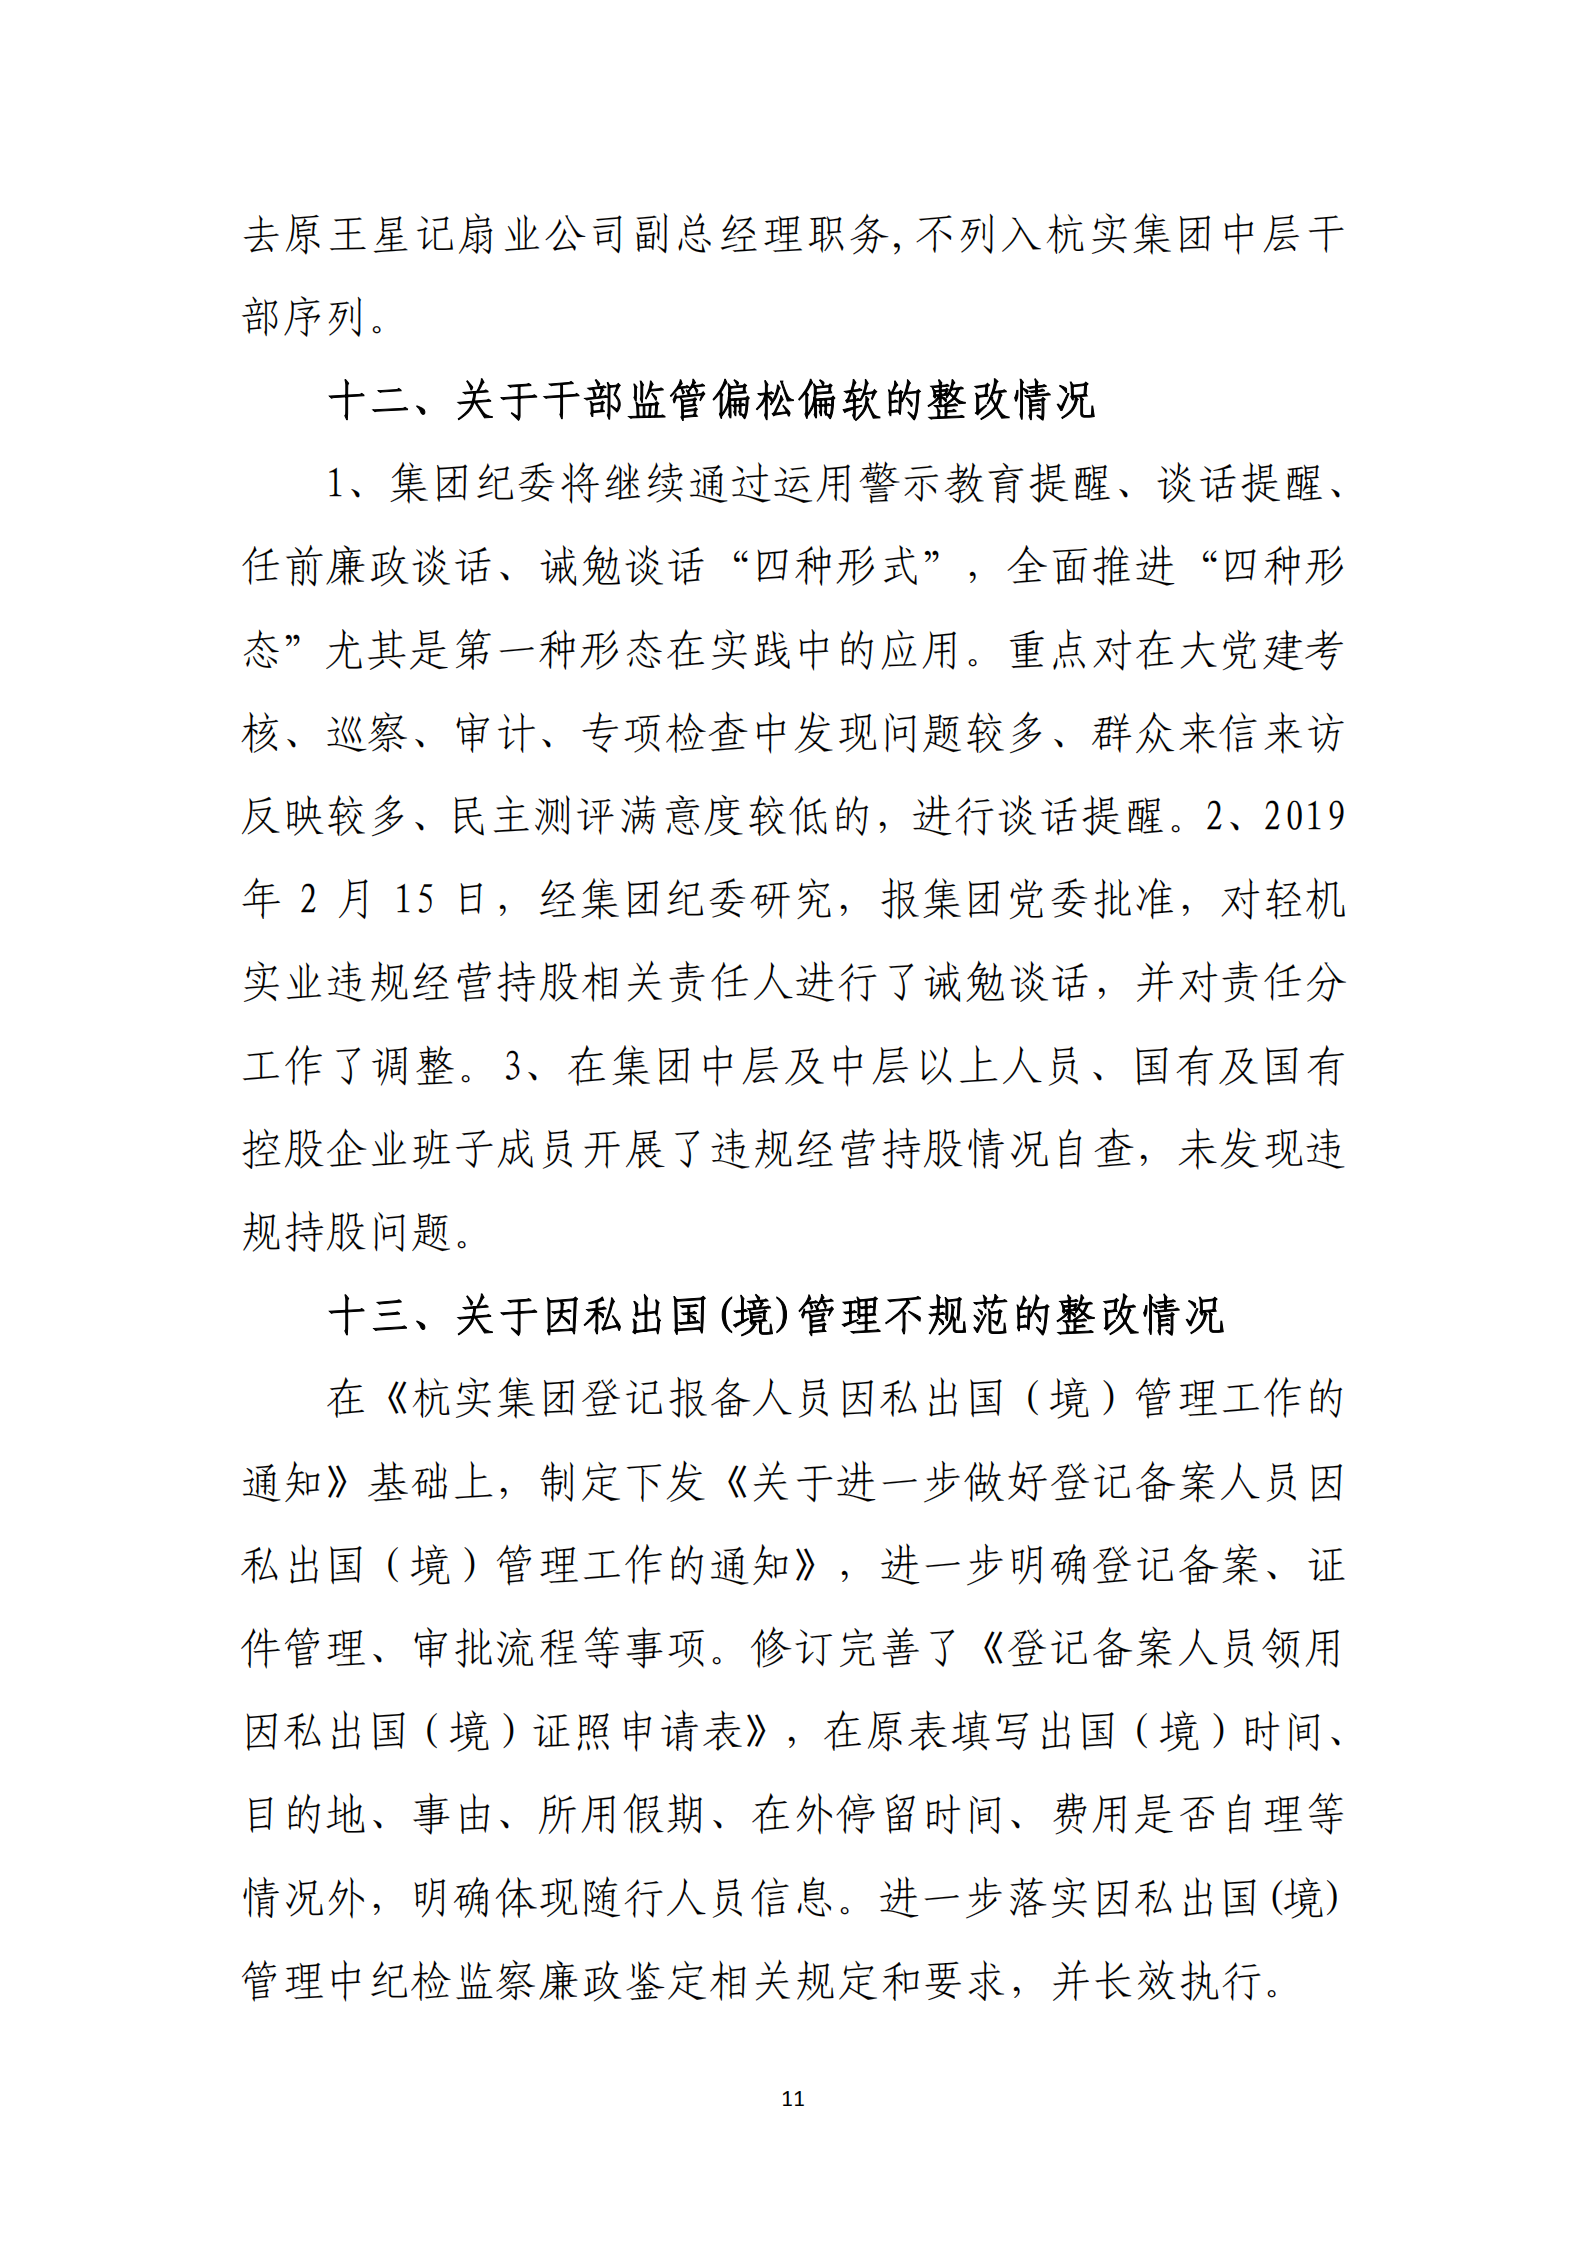 大阳城集团娱乐游戏党委关于巡察整改情况的通报_10.png